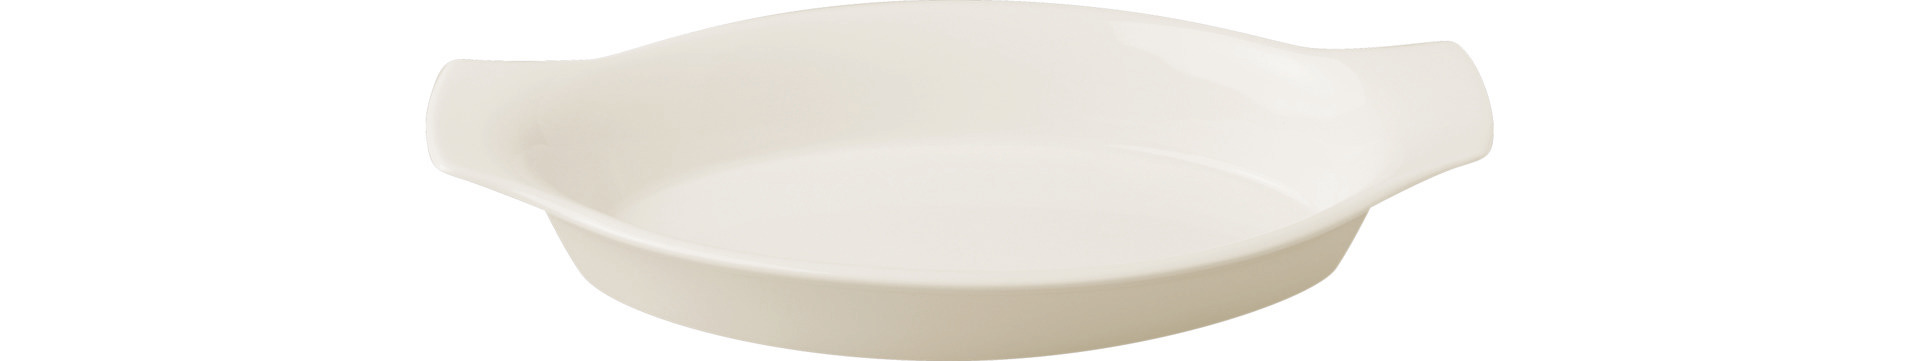 Schale oval mit Griffen 240 x 130 mm / 0,33 l crème